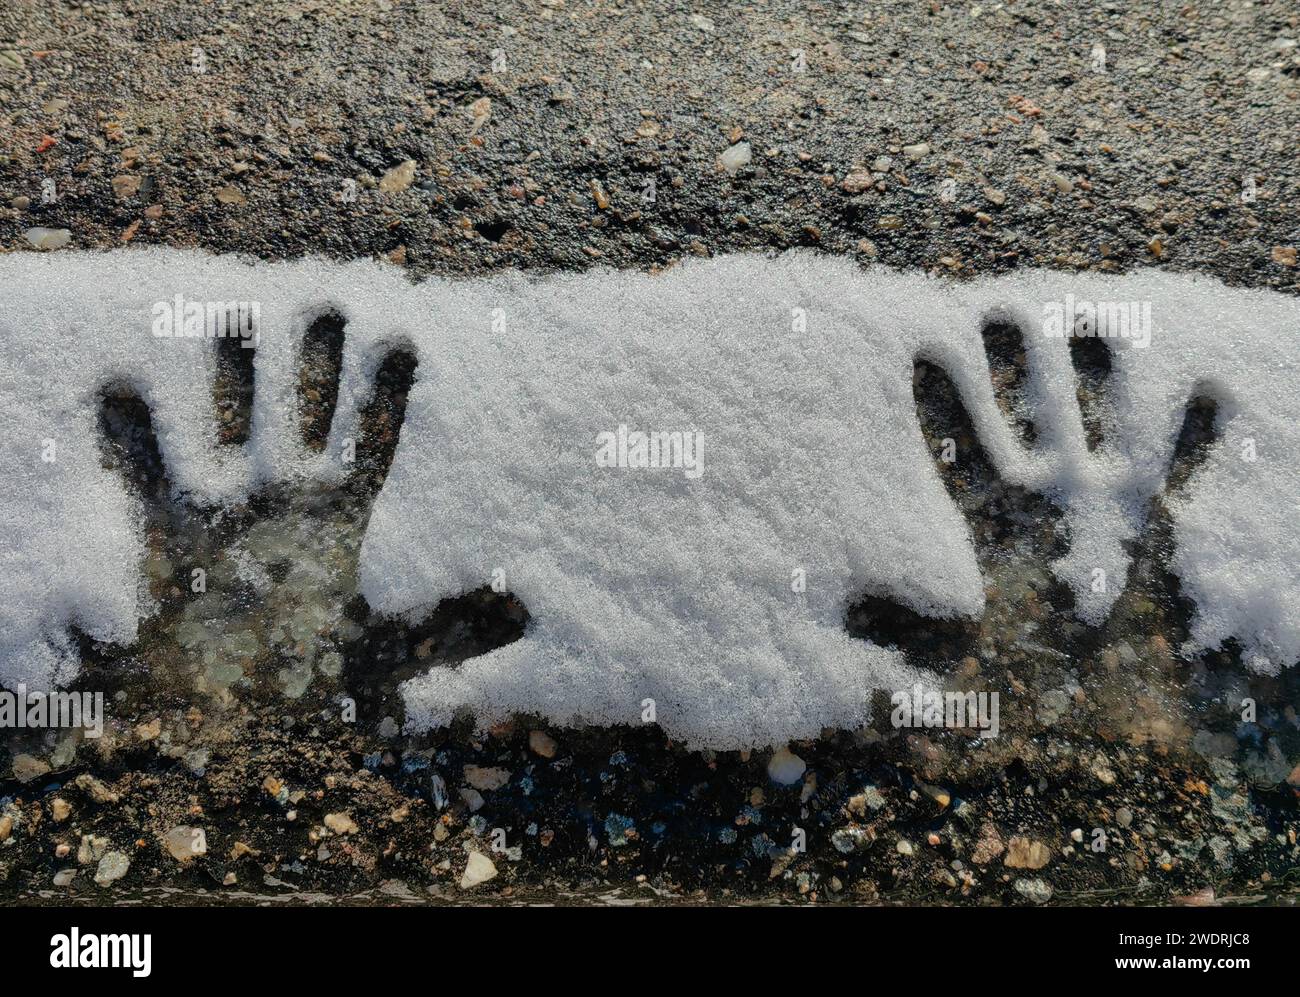 Le mani del bambino, nella neve. Spazio nero. Pavimento in calcestruzzo, monocromatico. Foto Stock